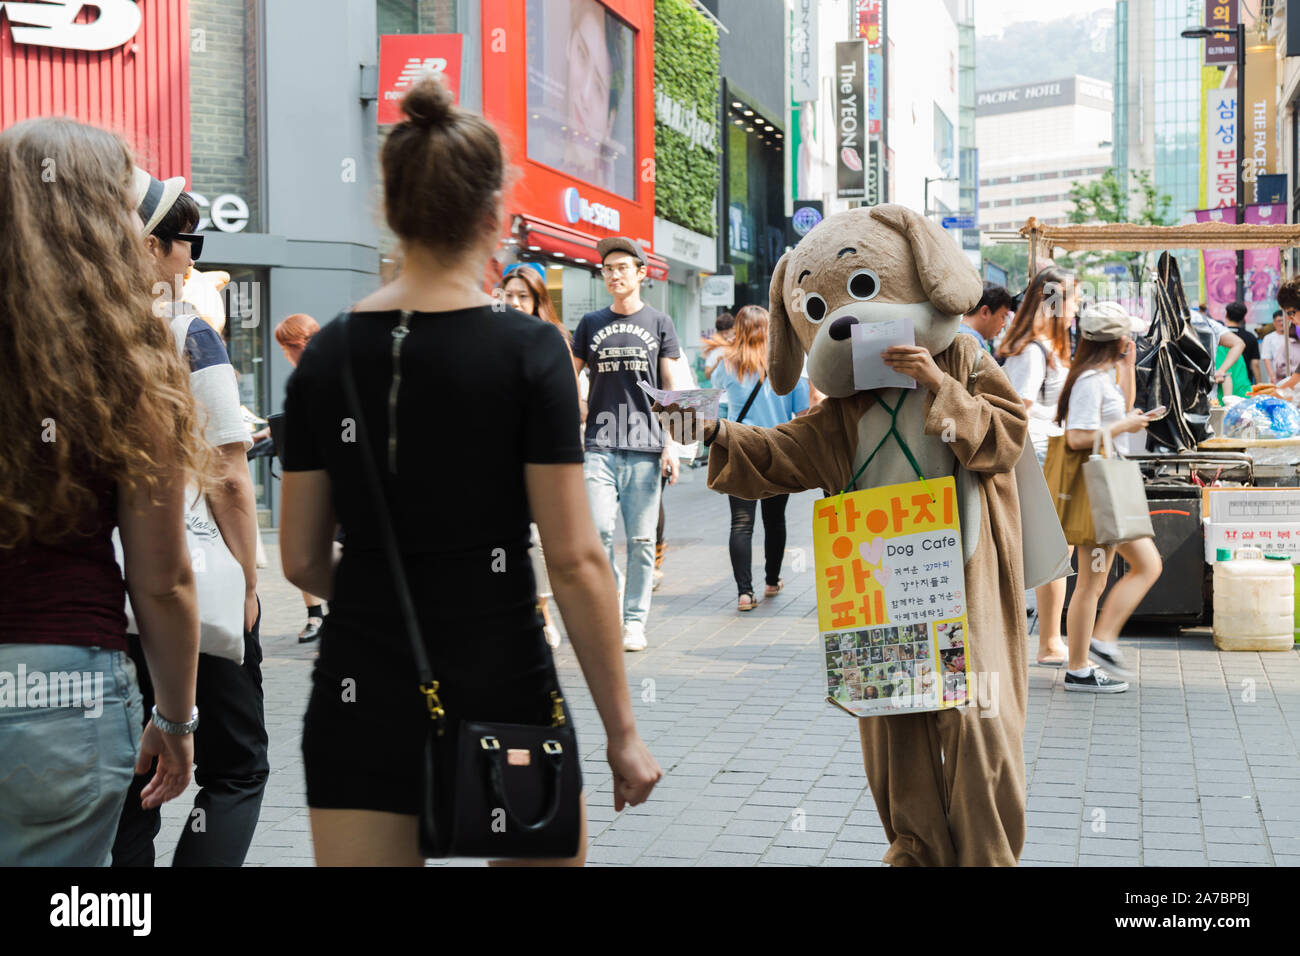 Ein Hund cafe Mitarbeiter in einem Kostüm versucht, gt, die Aufmerksamkeit von Touristen, die sich in der geschäftigen Myeong-dong Shopping Street, Seoul, Südkorea. Stockfoto